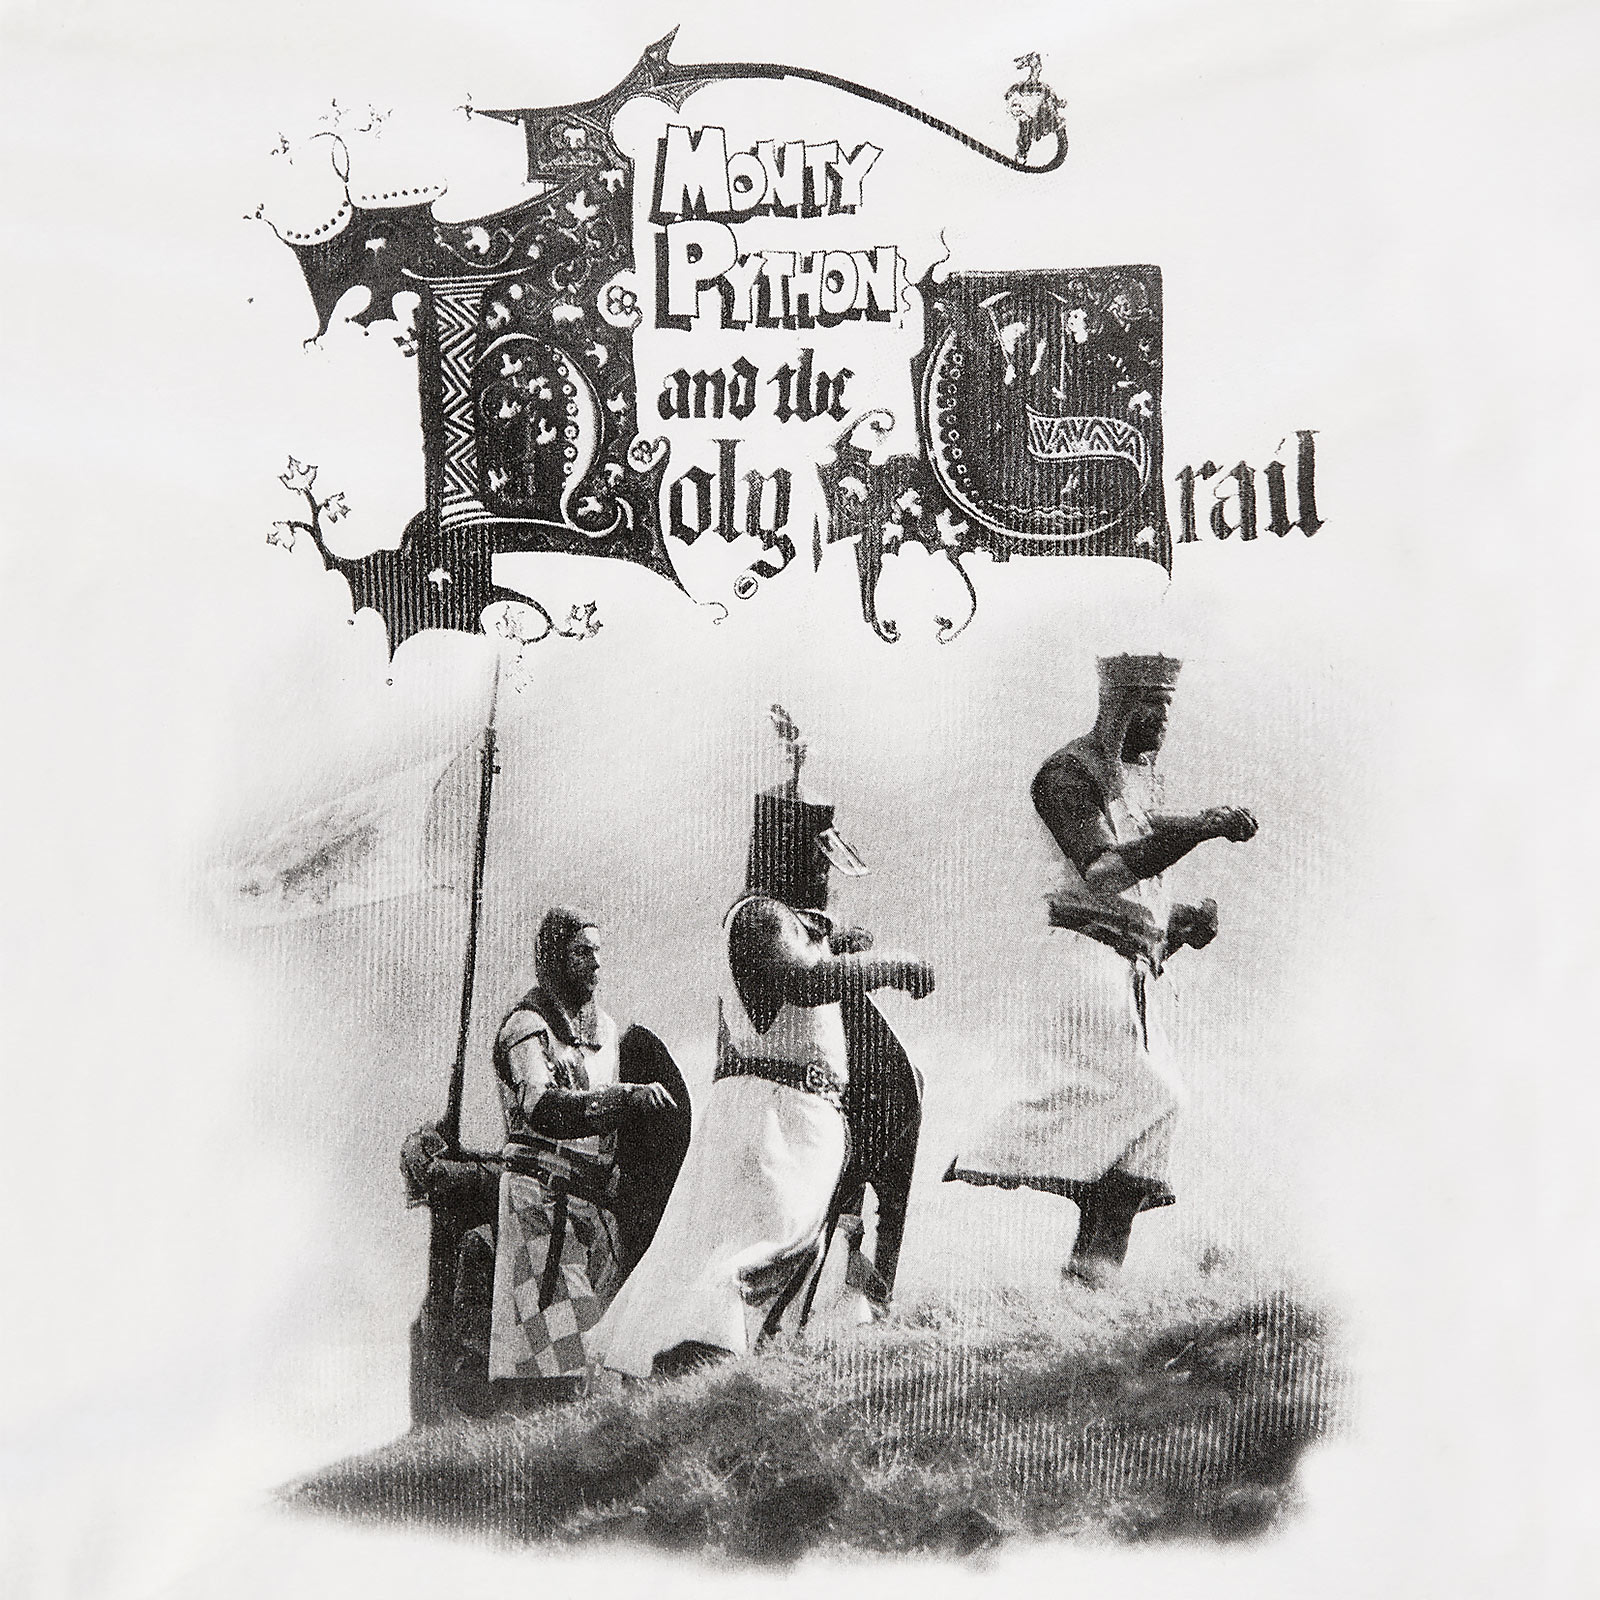 Monty Python - Les Chevaliers de la Noix de Coco T-Shirt blanc